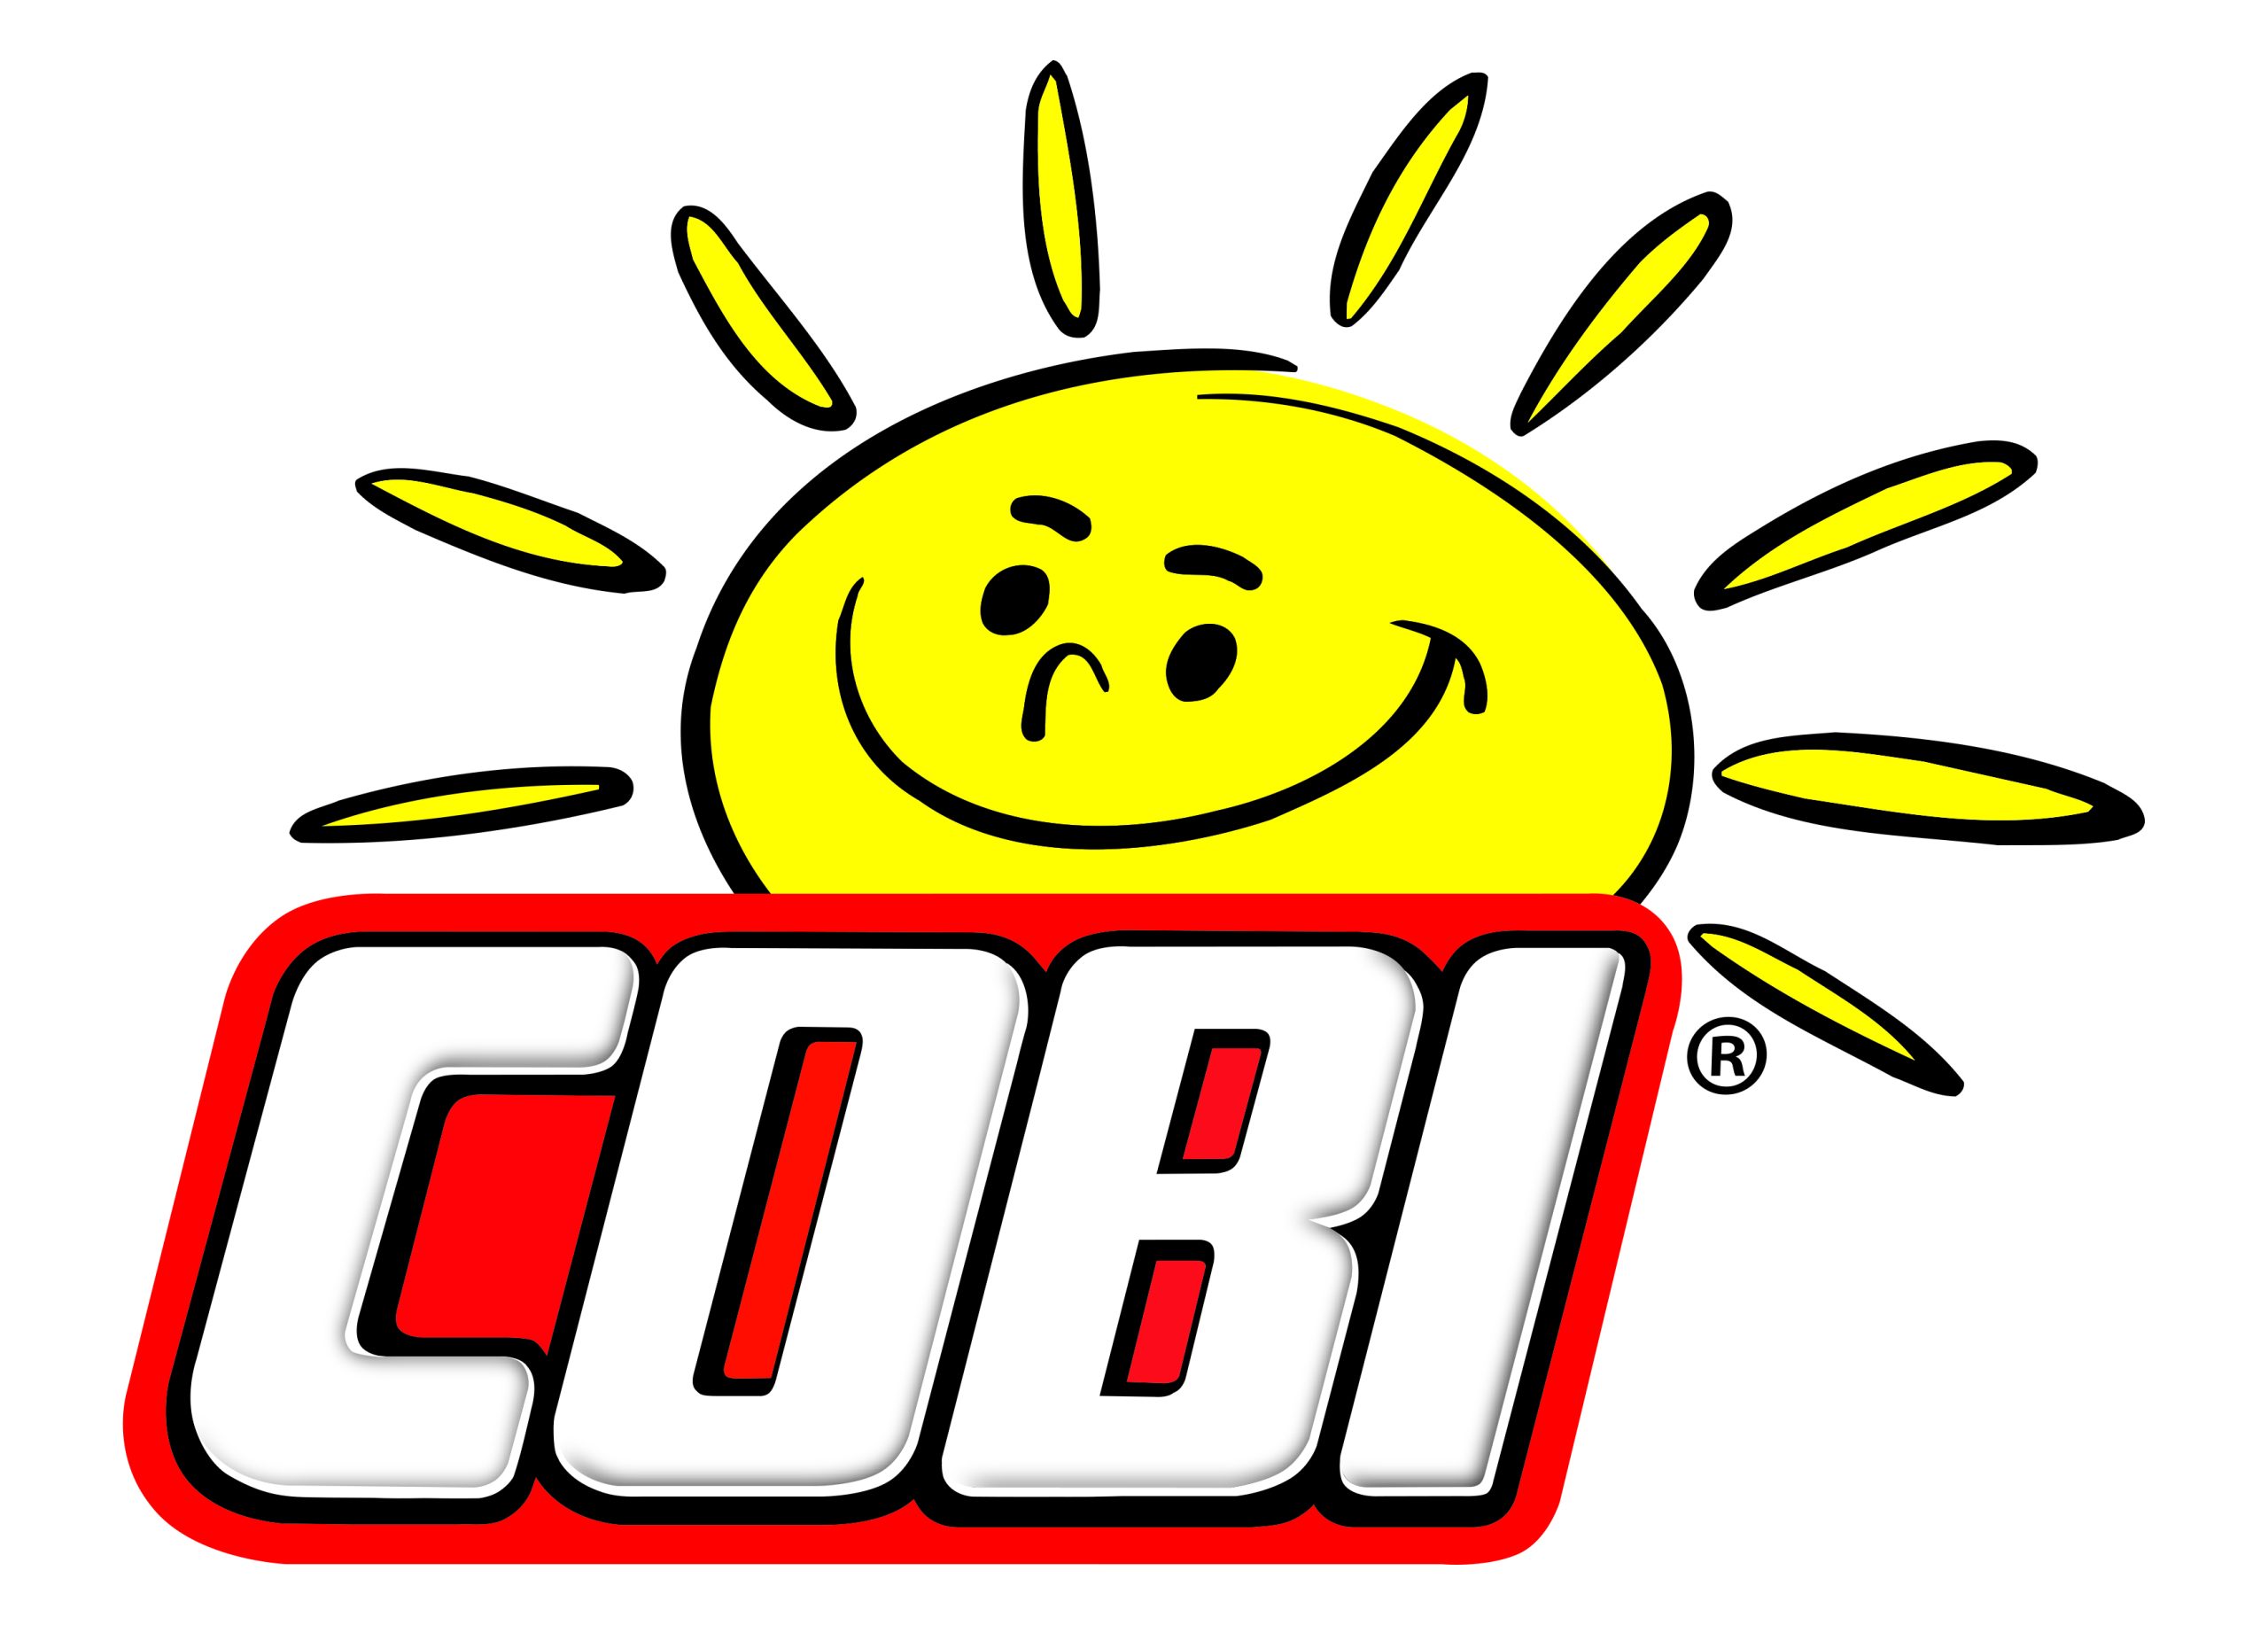 Logo Cobi